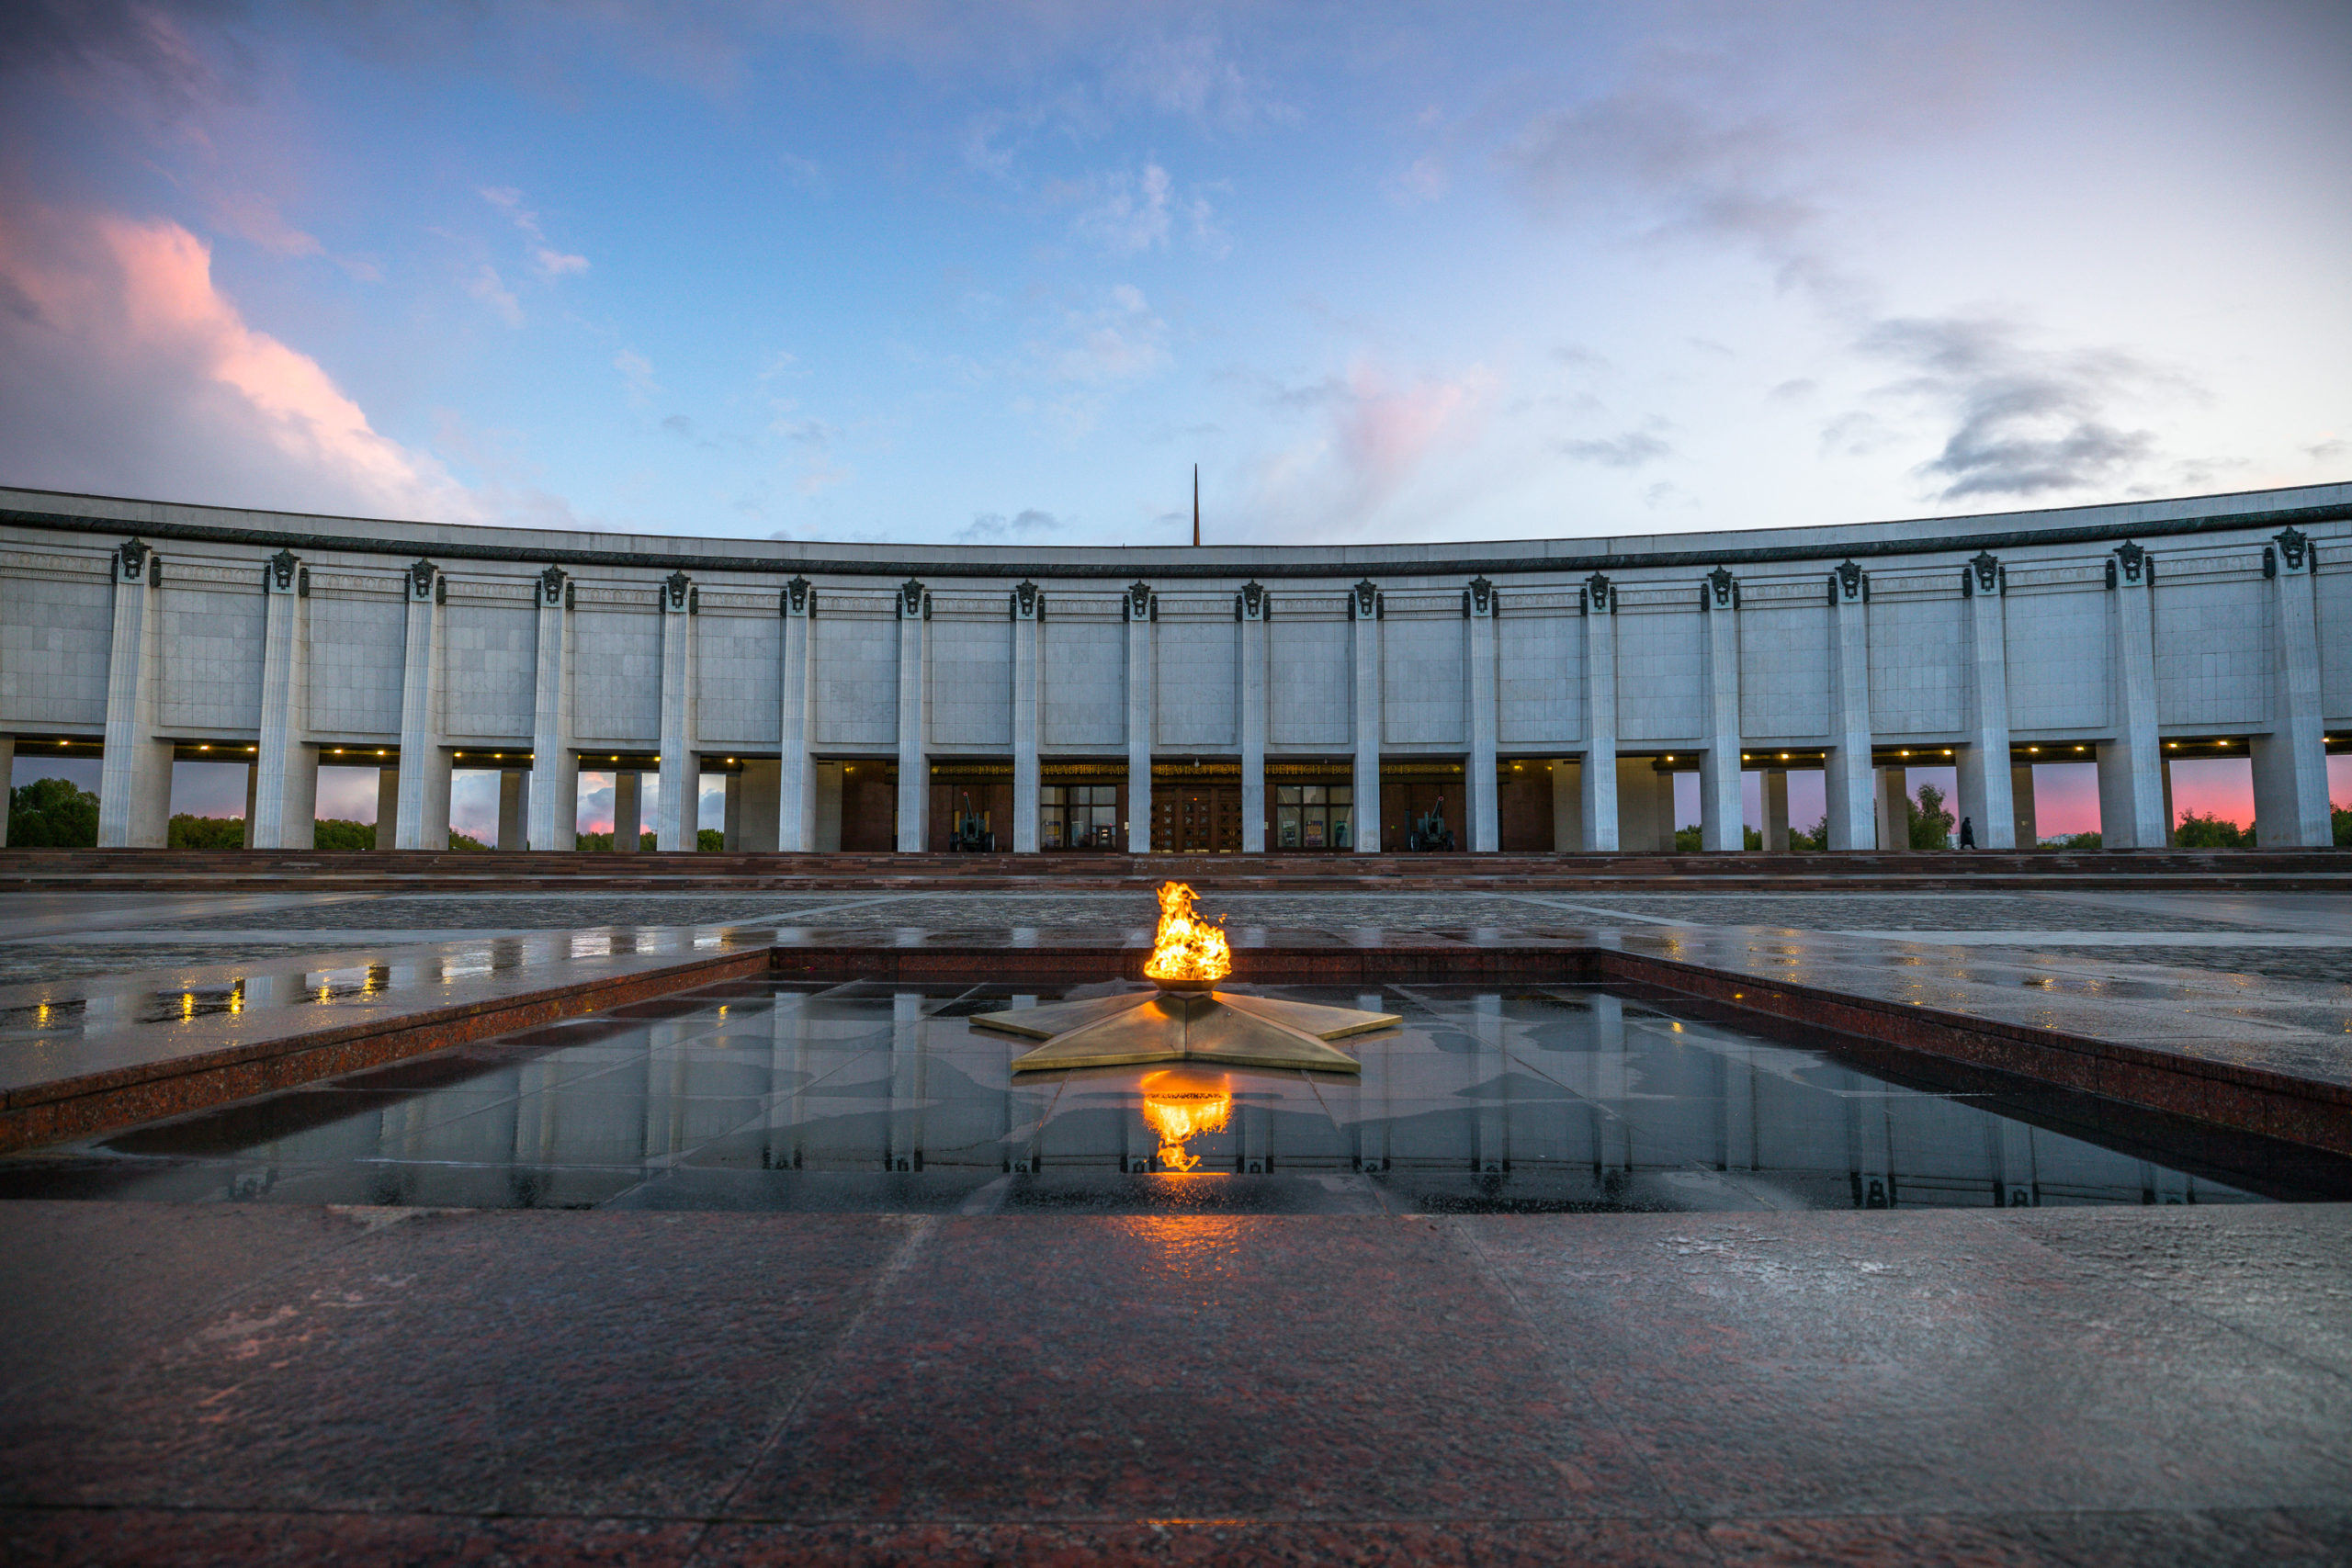 Музей Победы в Москве